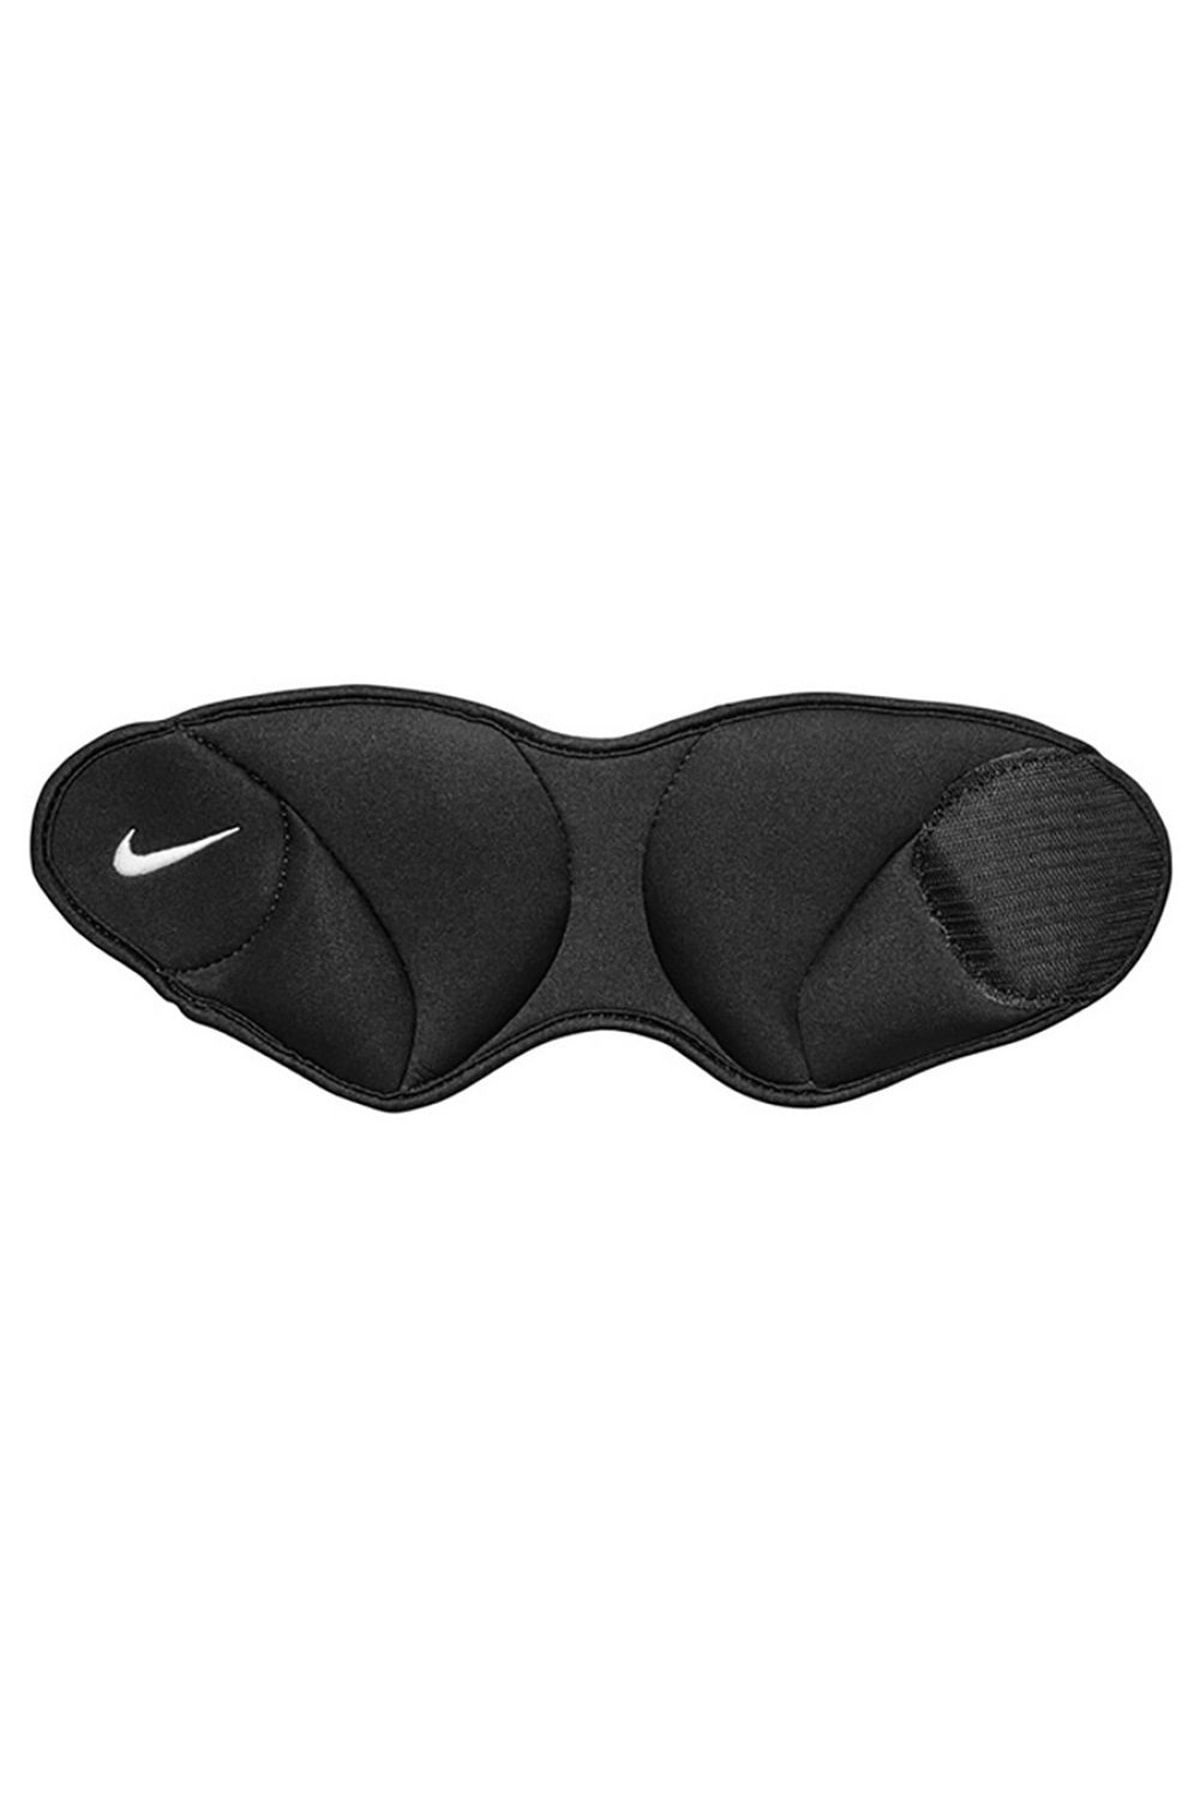 Nike Ayak Ağırlığı 2,3 kg N1000815-010